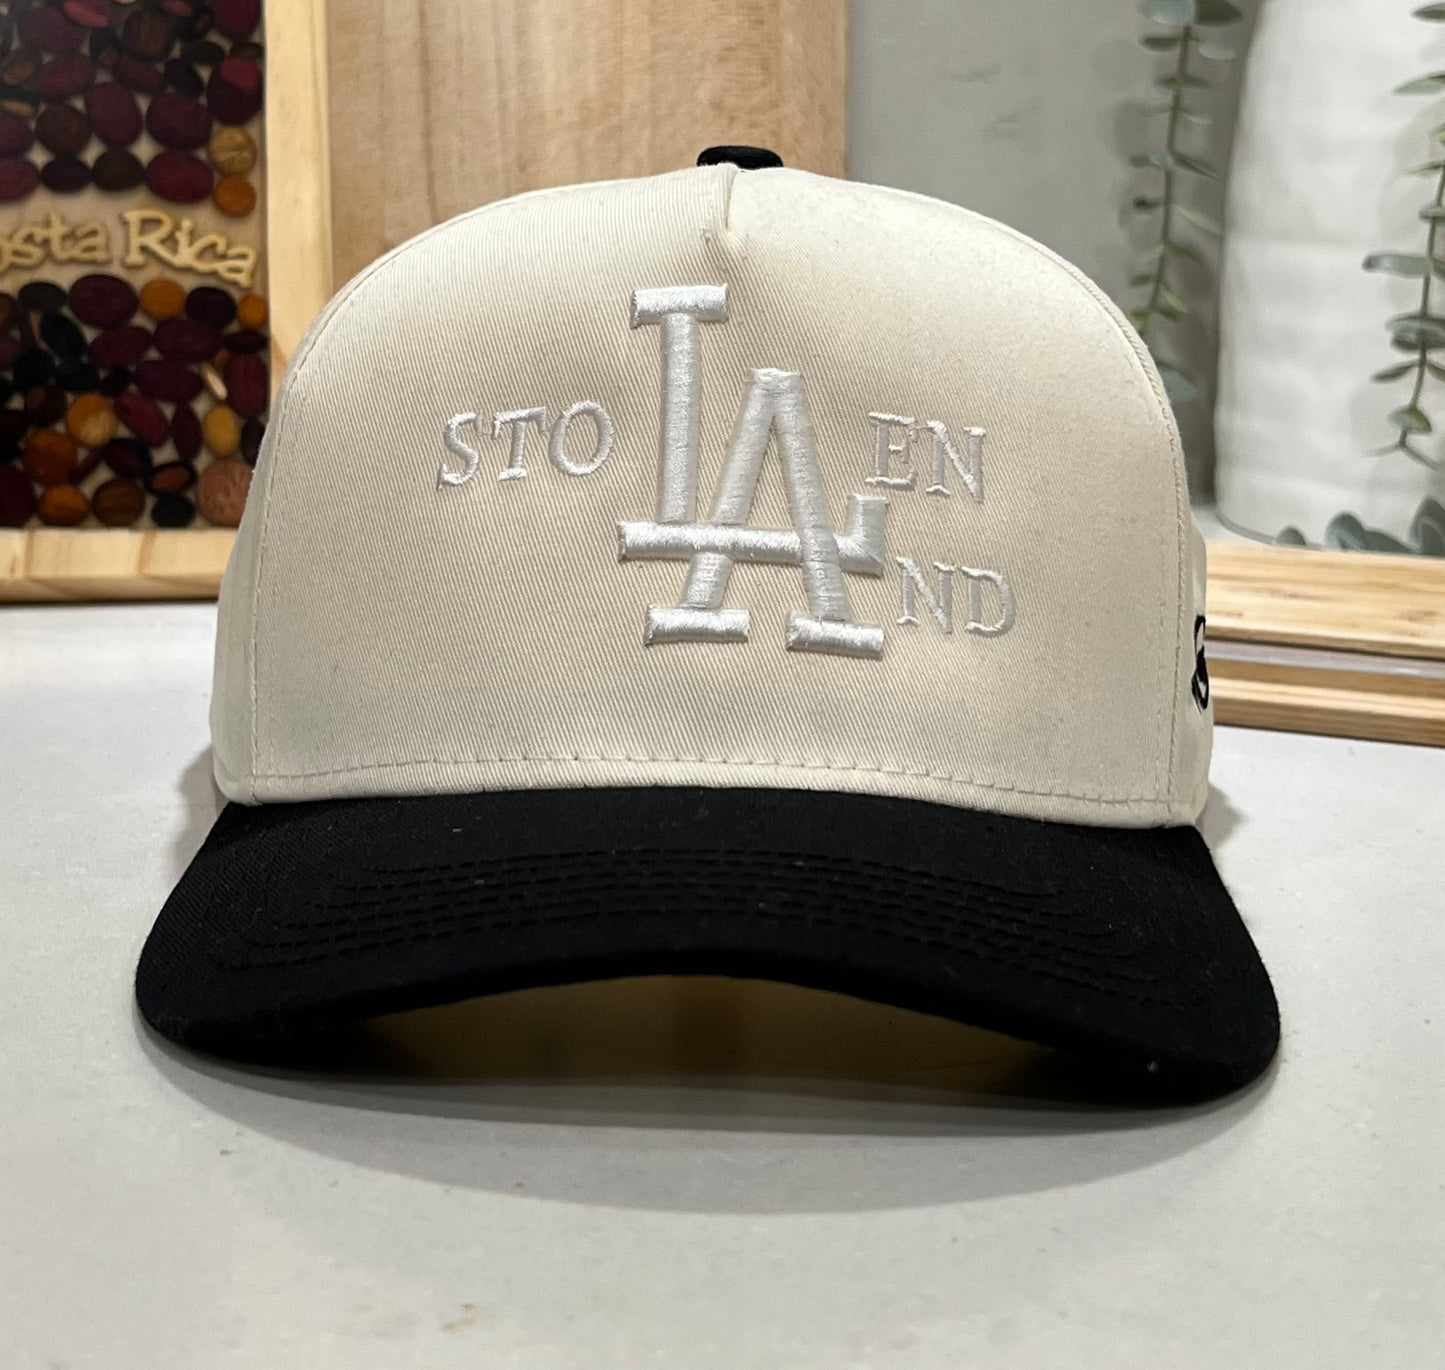 Stolen LAnd ( white on off white ) hat